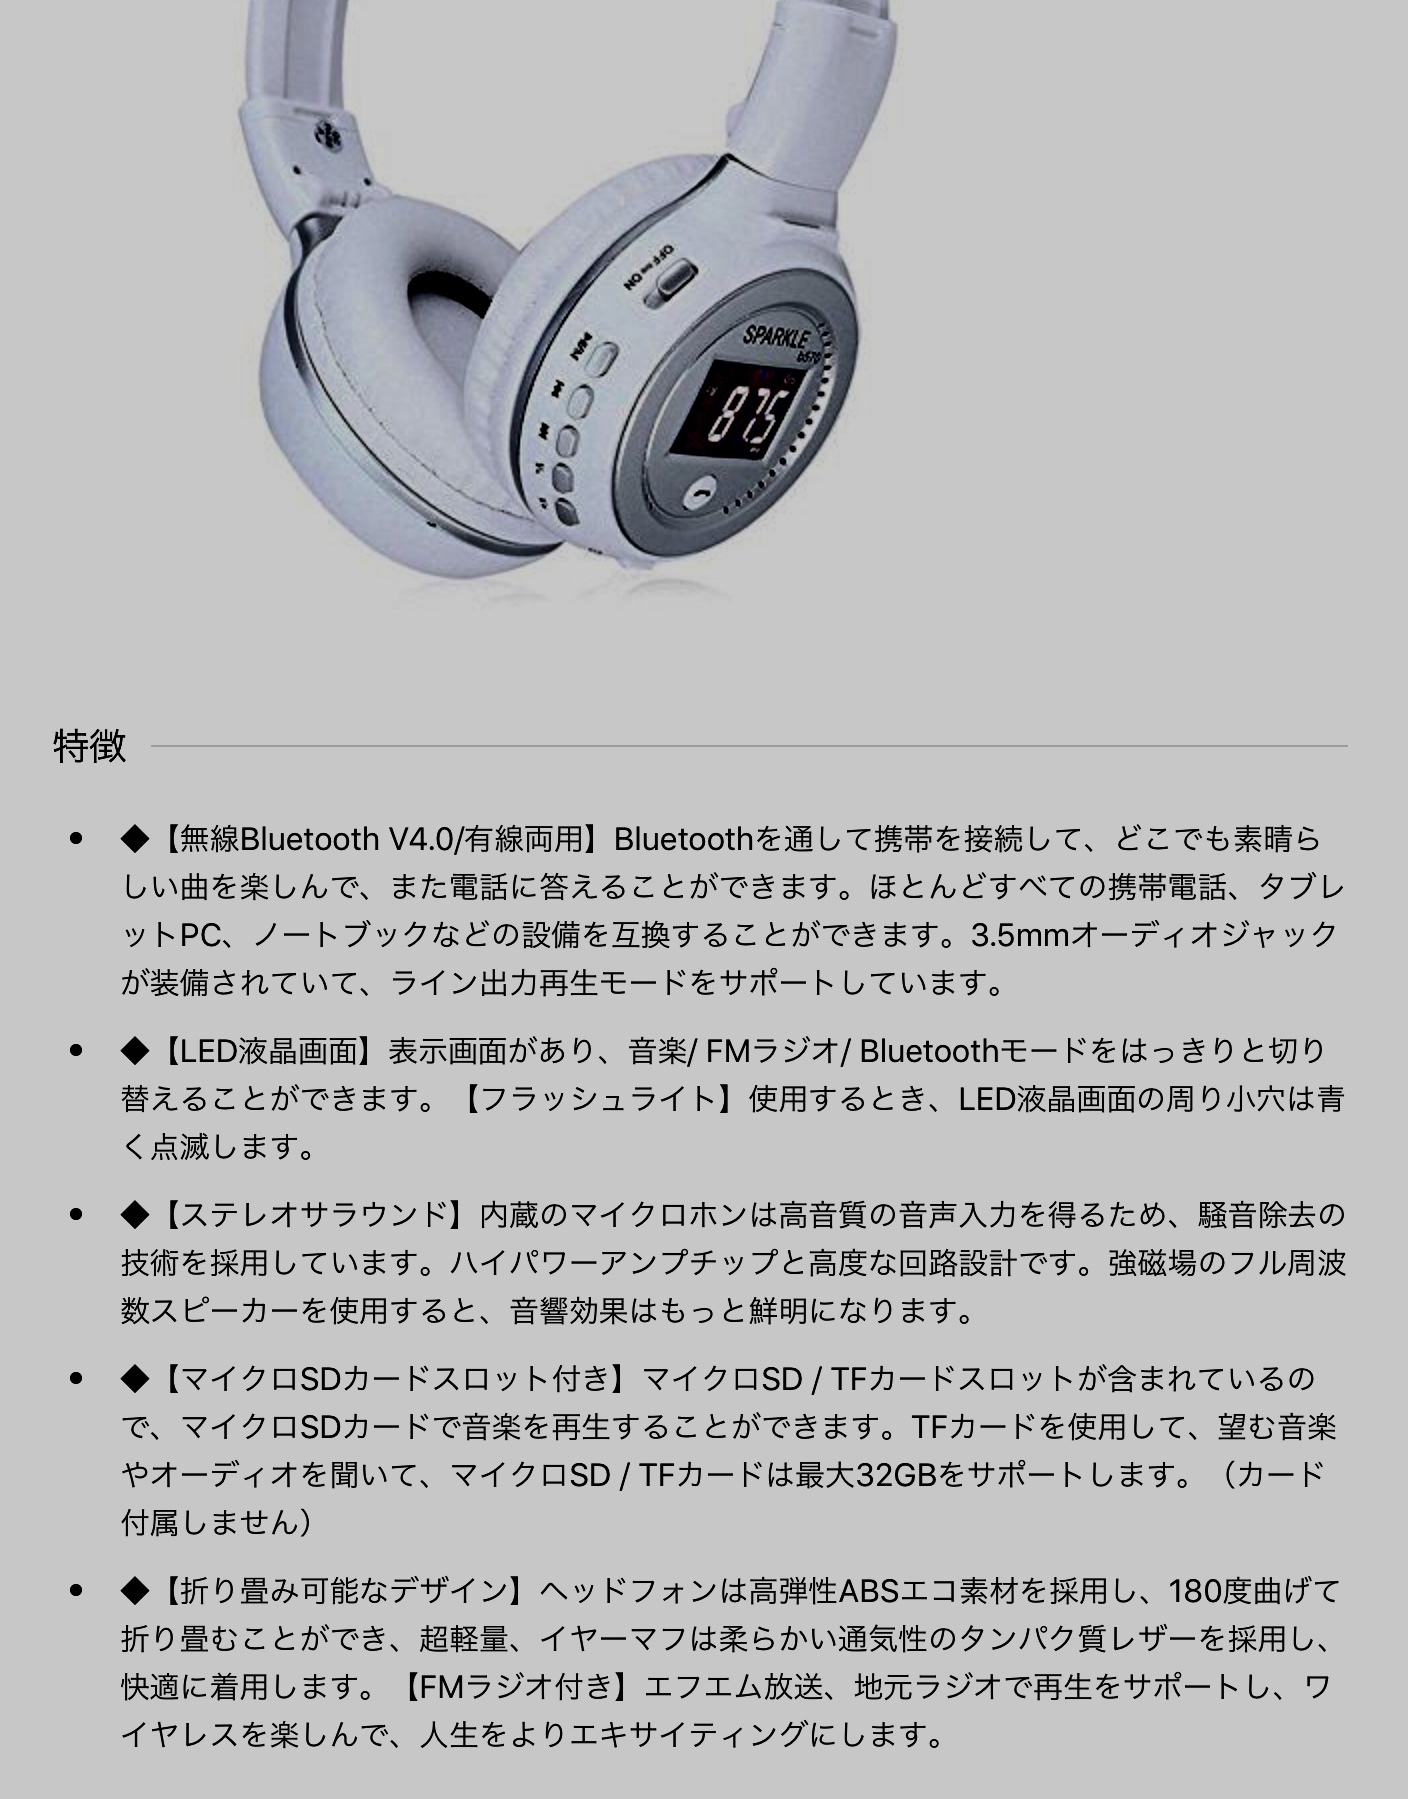 1576円 とっておきし福袋 Divoom バッテリー搭載 3W×2出力 MP3プレーヤーamp;スピーカー iTour-Boom Black